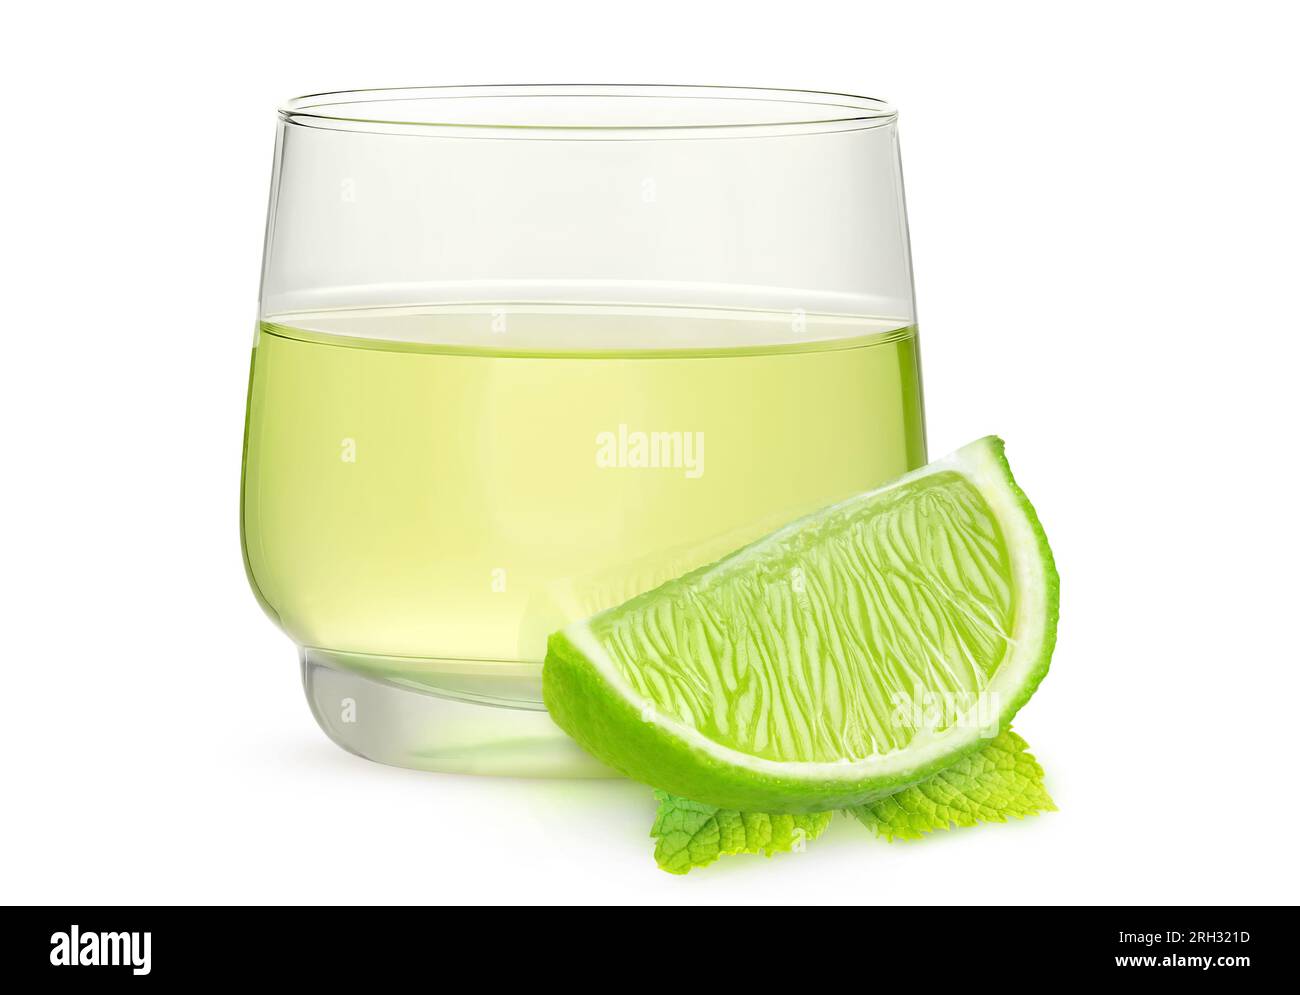 Boisson de citron vert dans un verre, morceau de citron vert et feuille de menthe, isolé sur blanc Banque D'Images